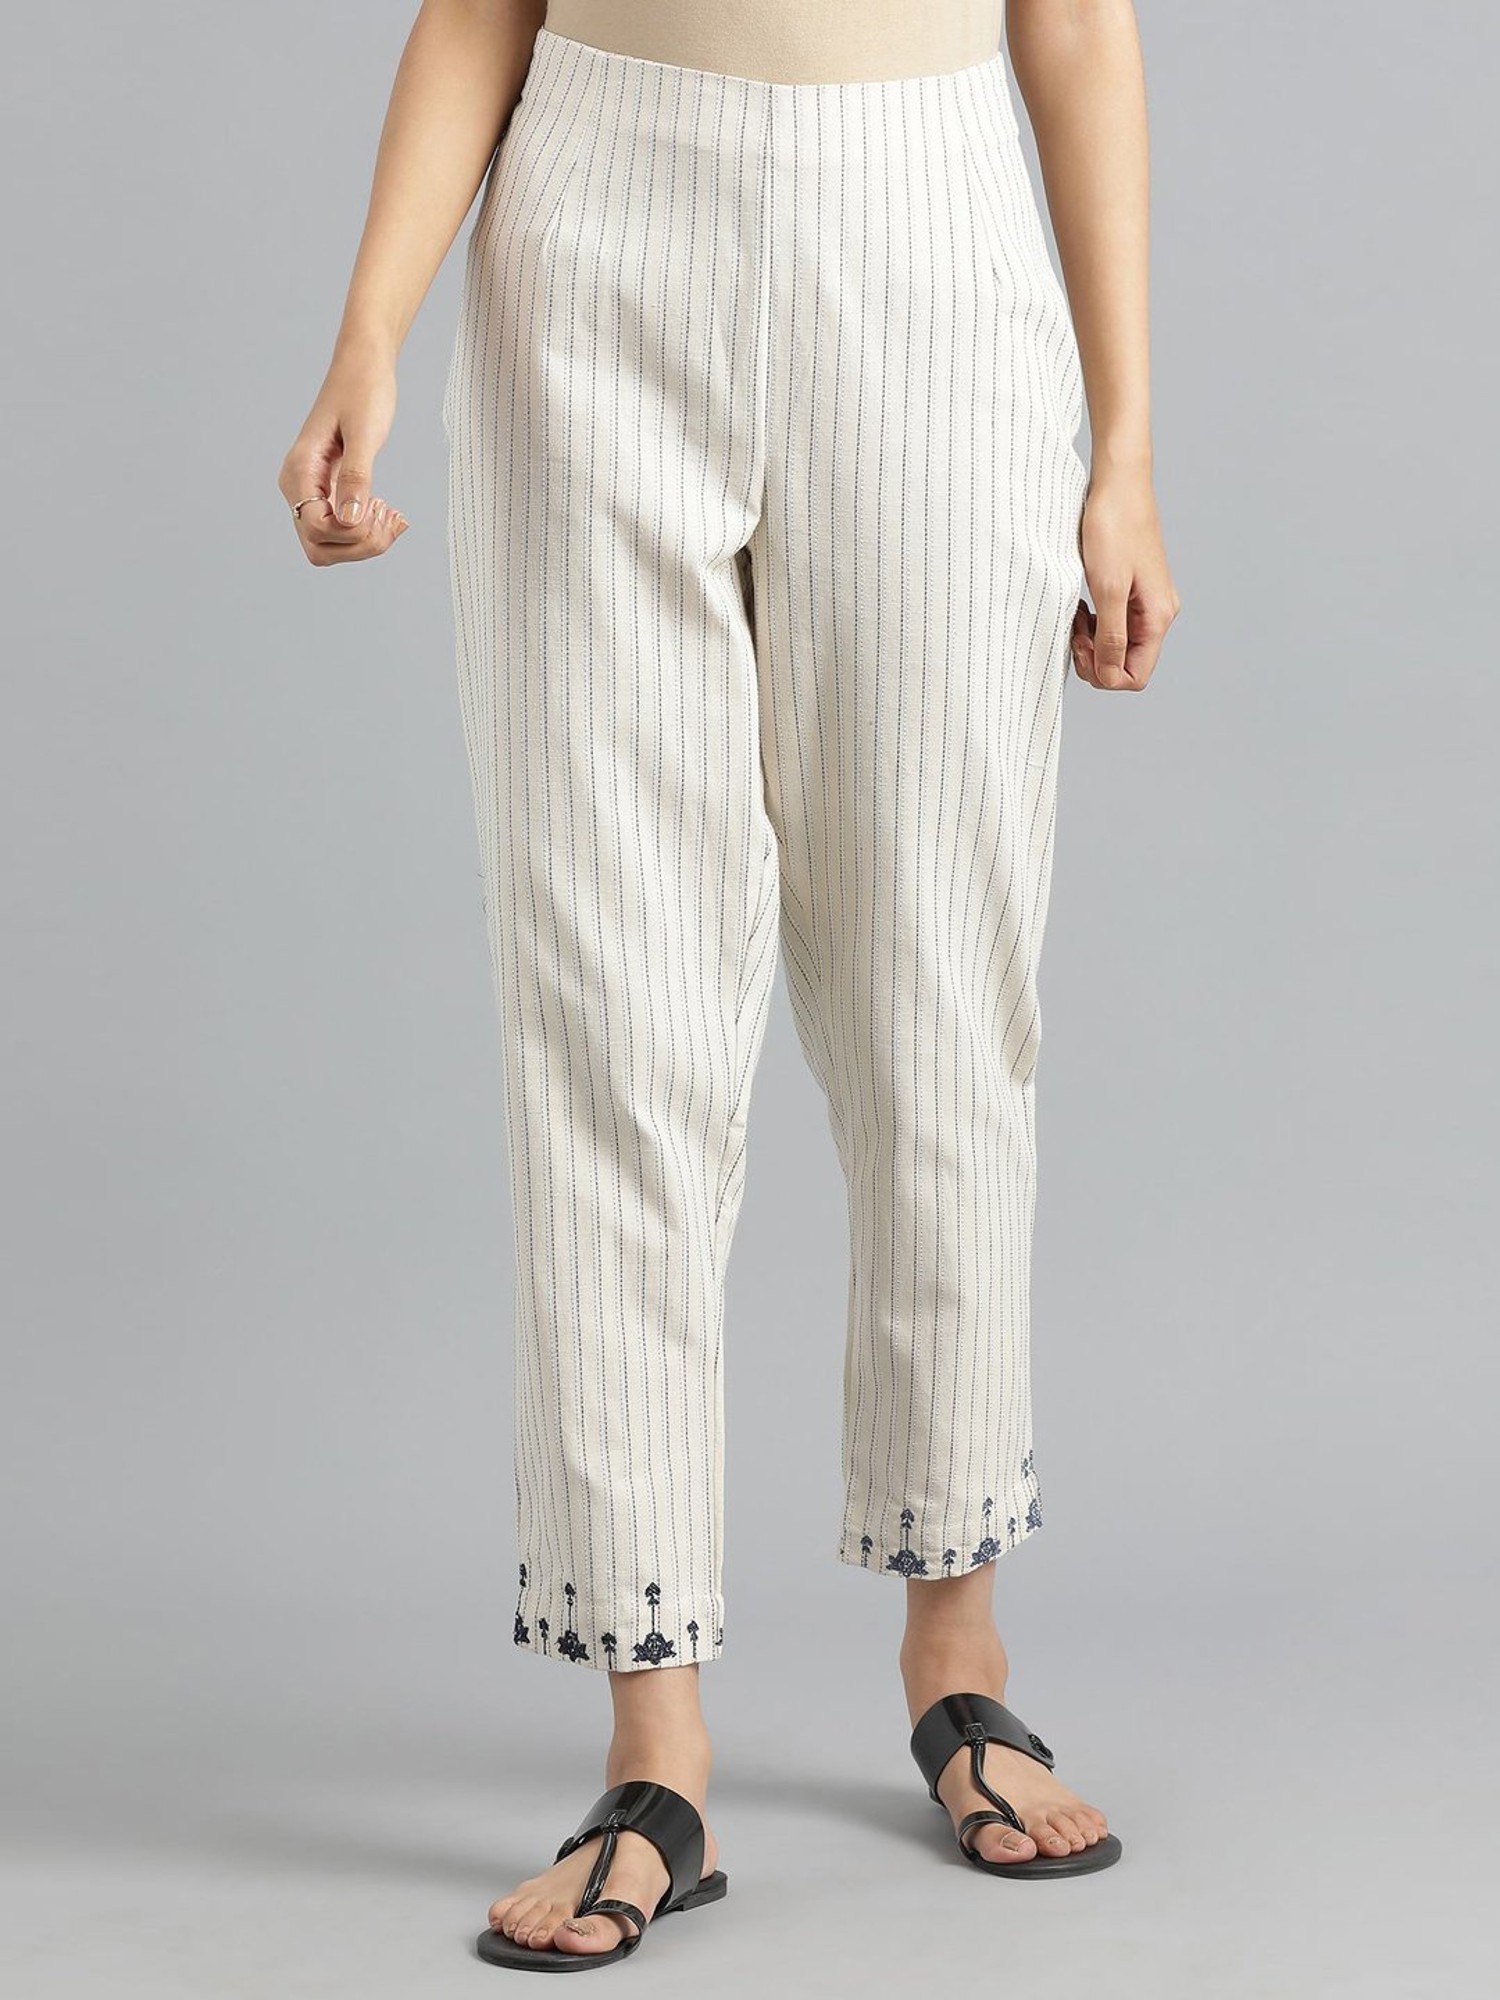 Buy Plus Size Cotton Palazzo Pants  Plus Size White Striped Pants  Apella